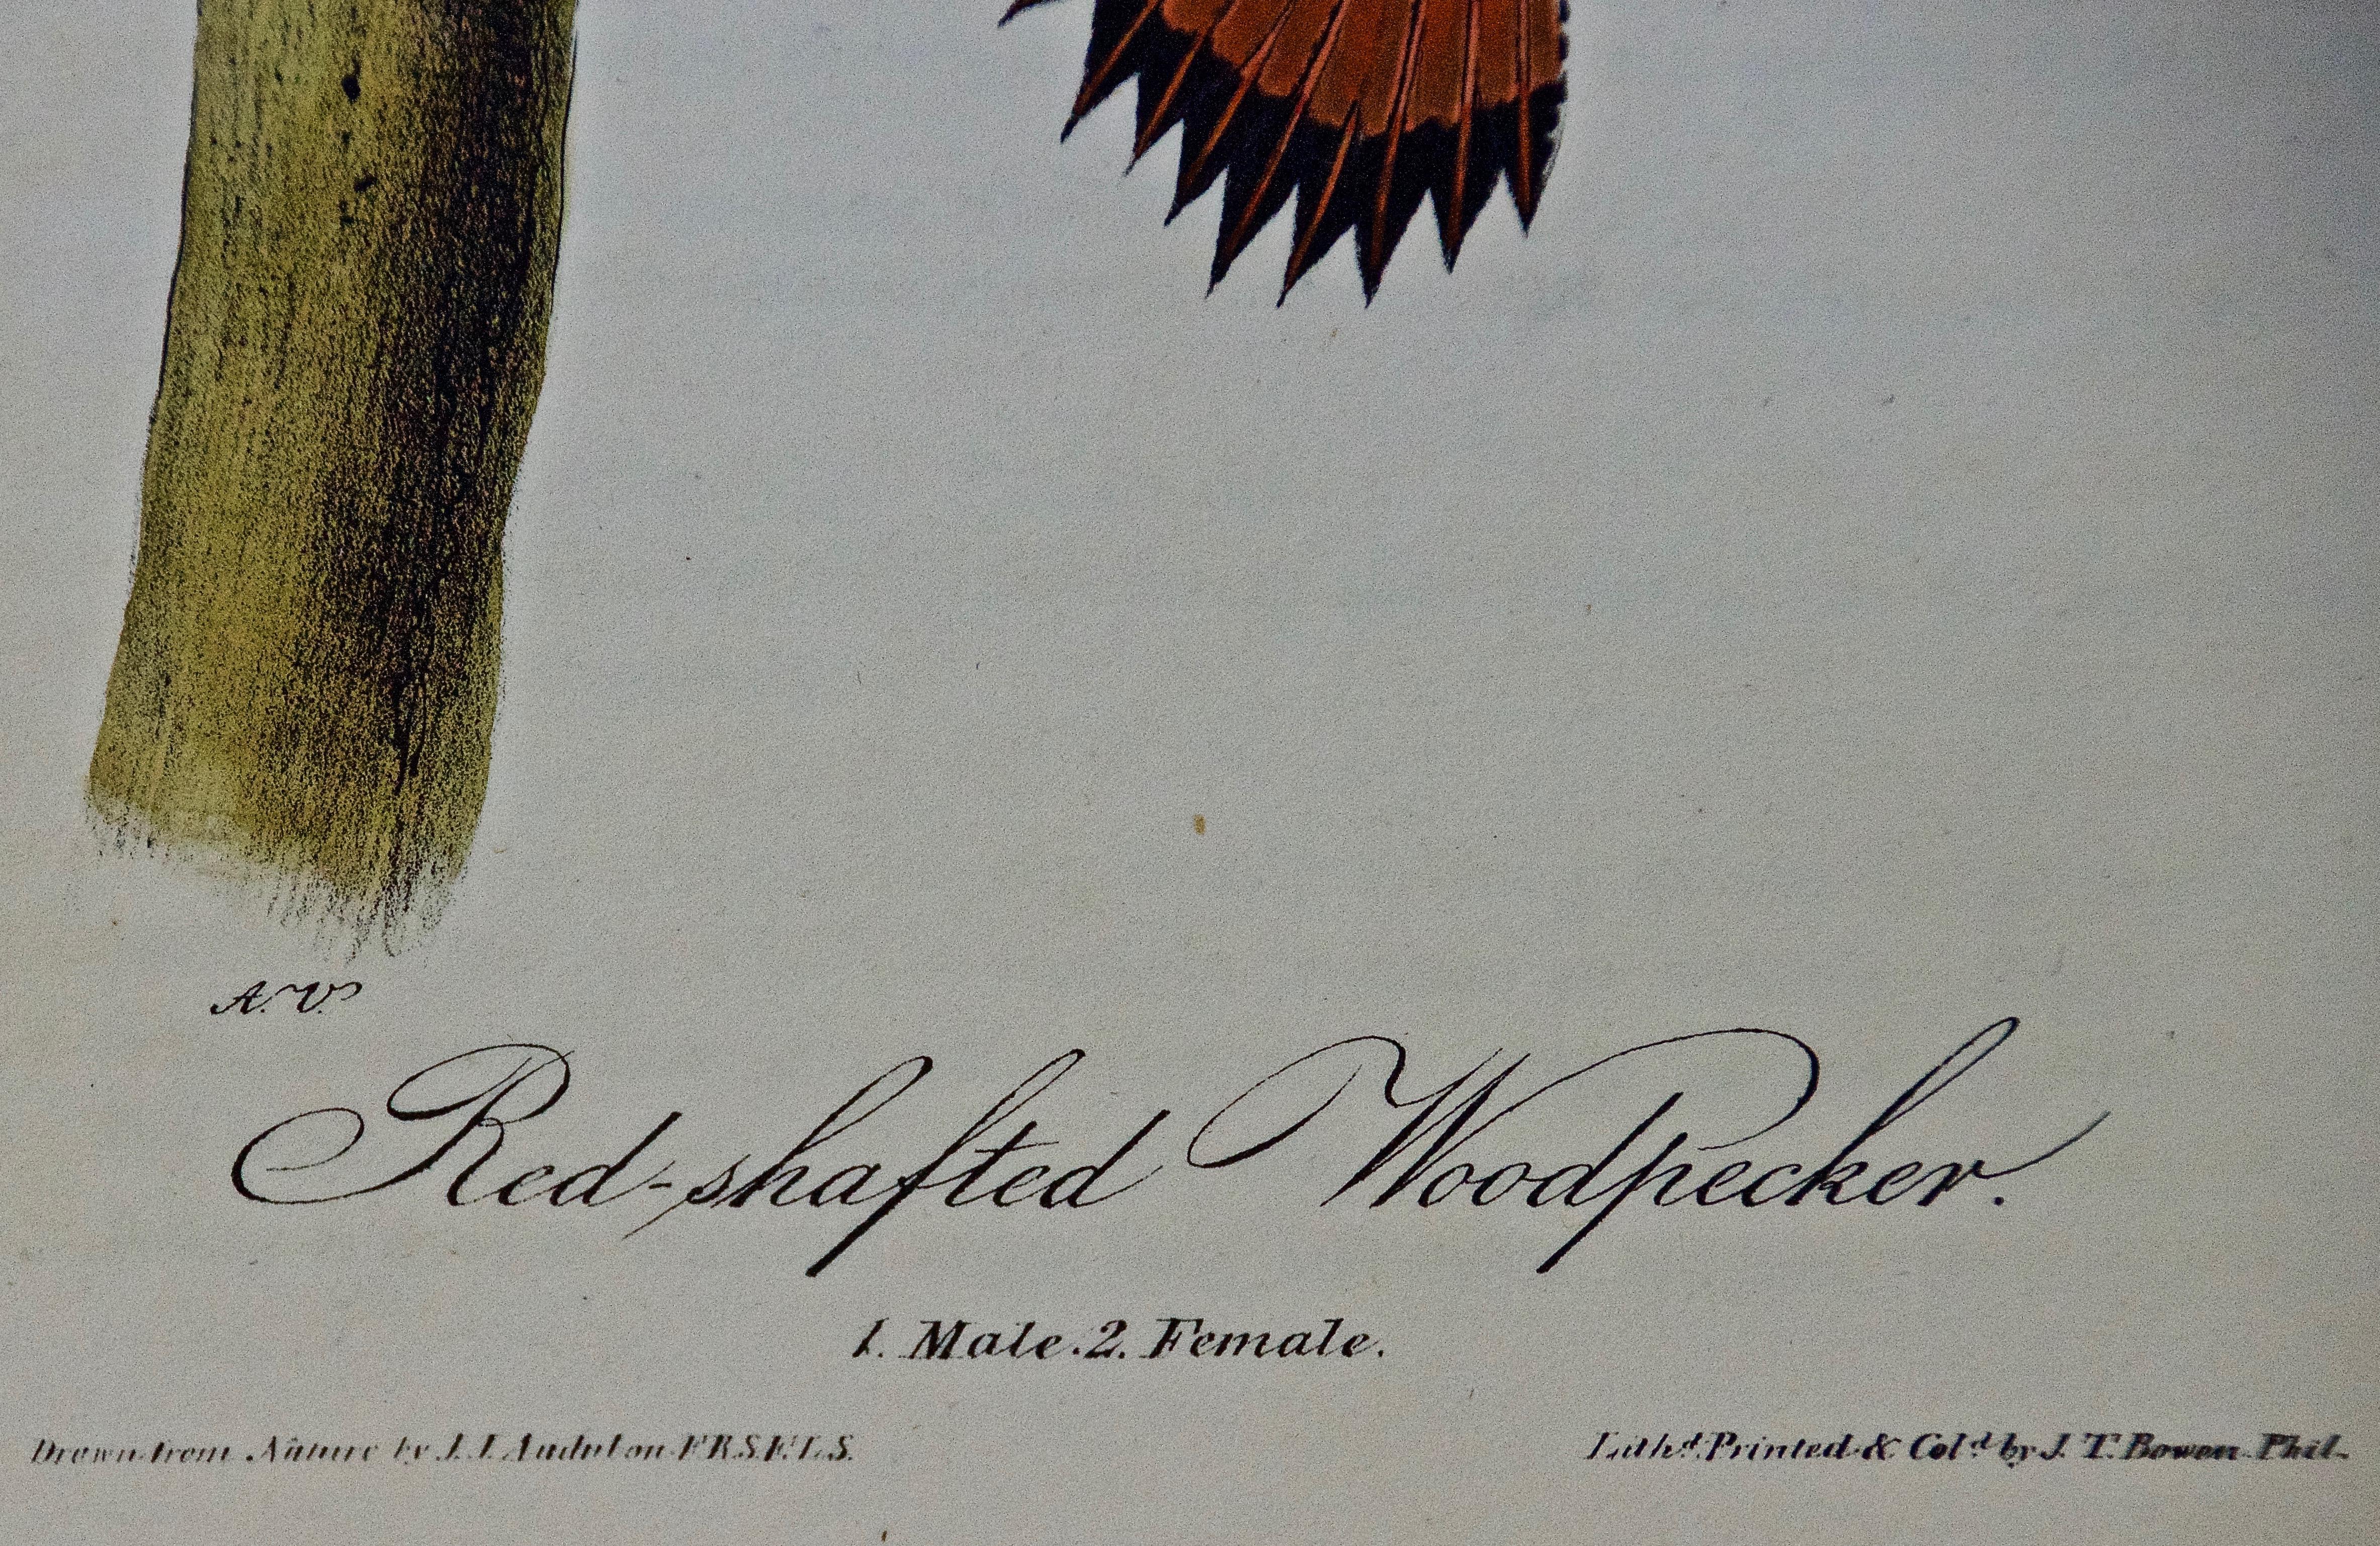 Dies ist ein Original John James Audubon handkolorierte königliche erste Oktav-Ausgabe Lithographie mit dem Titel 